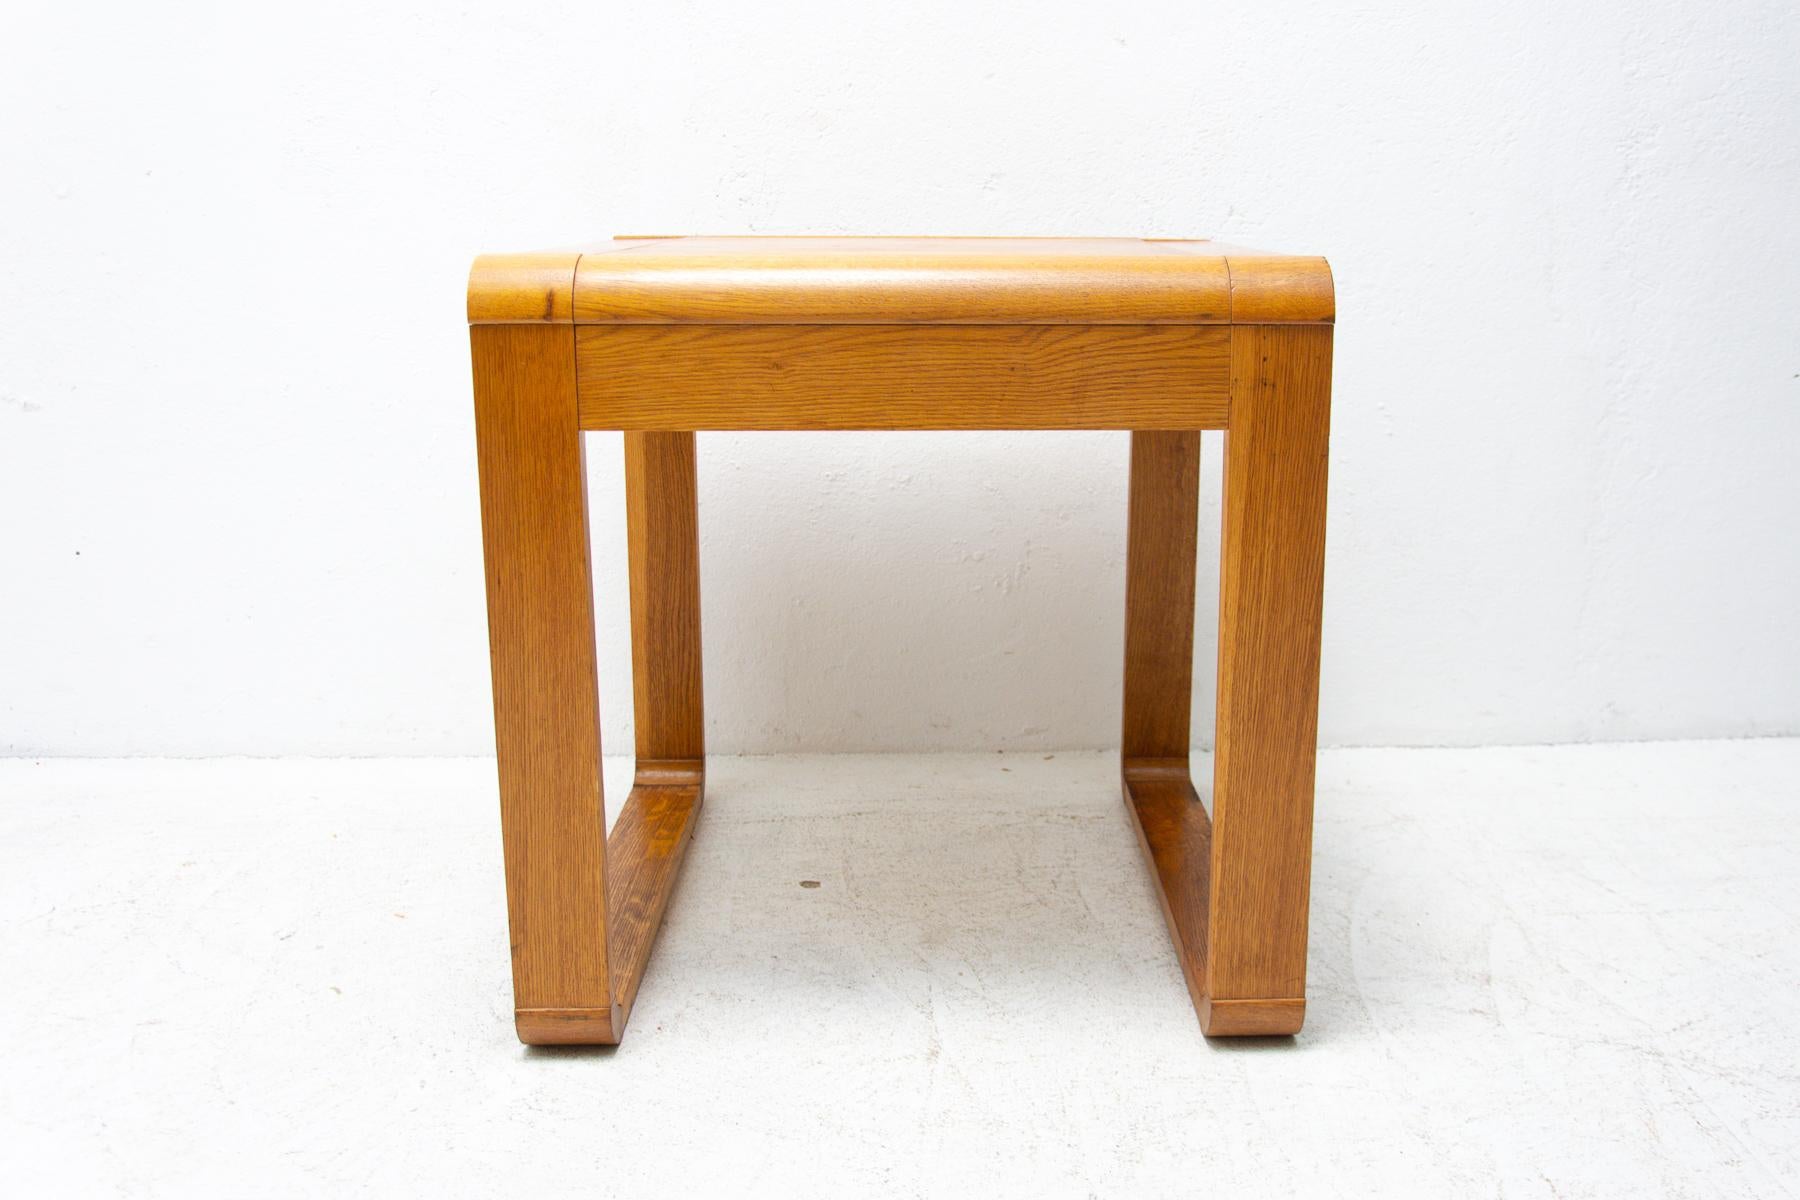 Cette table basse a été fabriquée dans les années 1970 dans l'ancienne Tchécoslovaquie. La table est fabriquée en bois de hêtre. Il est dans un état original préservé sans dommage, il montre des signes d'âge et d'utilisation.